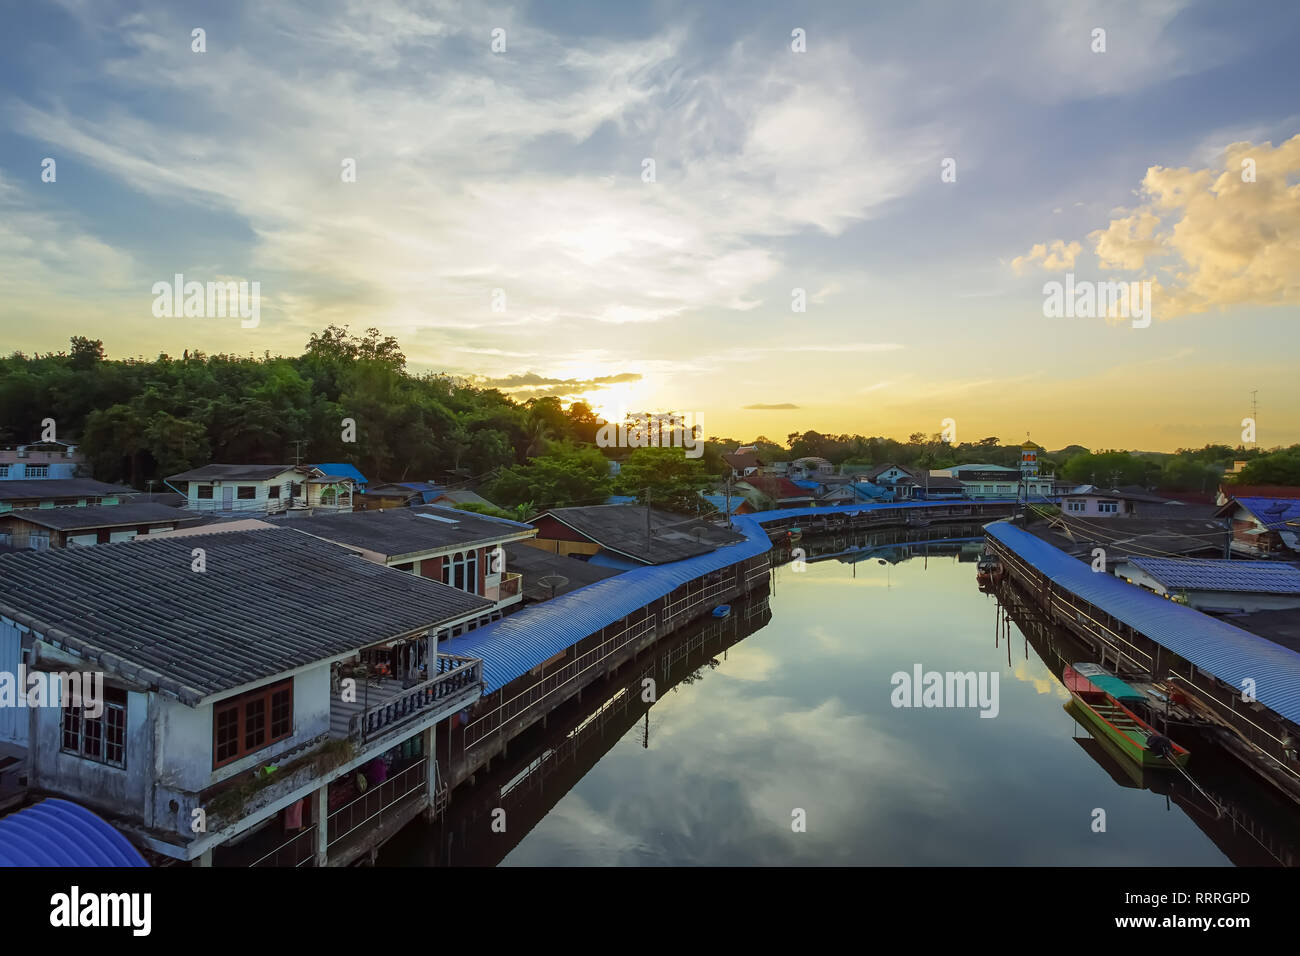 Trat, Thailand - Dezember 01, 2018: Vor Sonnenuntergang in Ban Nam Chieo Dorf, Trat Provinz, Thailand. Dieser Ort ist berühmt Reiseziele in E Stockfoto